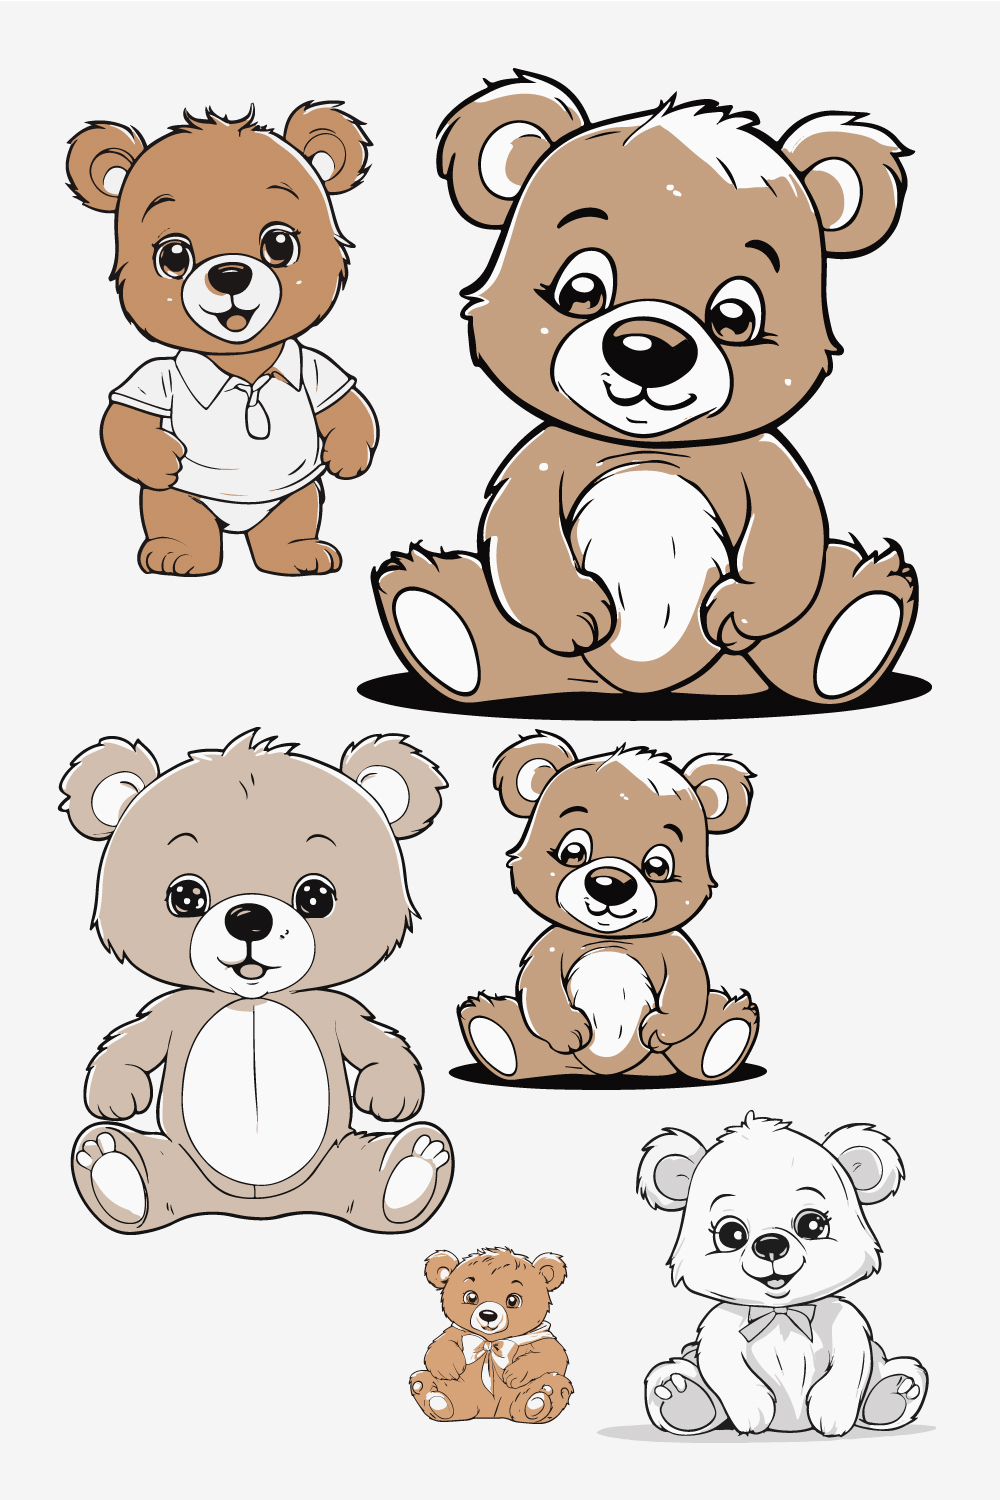 Cartoon cute baby bear line art Sticker and t-shirt design pinterest preview image.